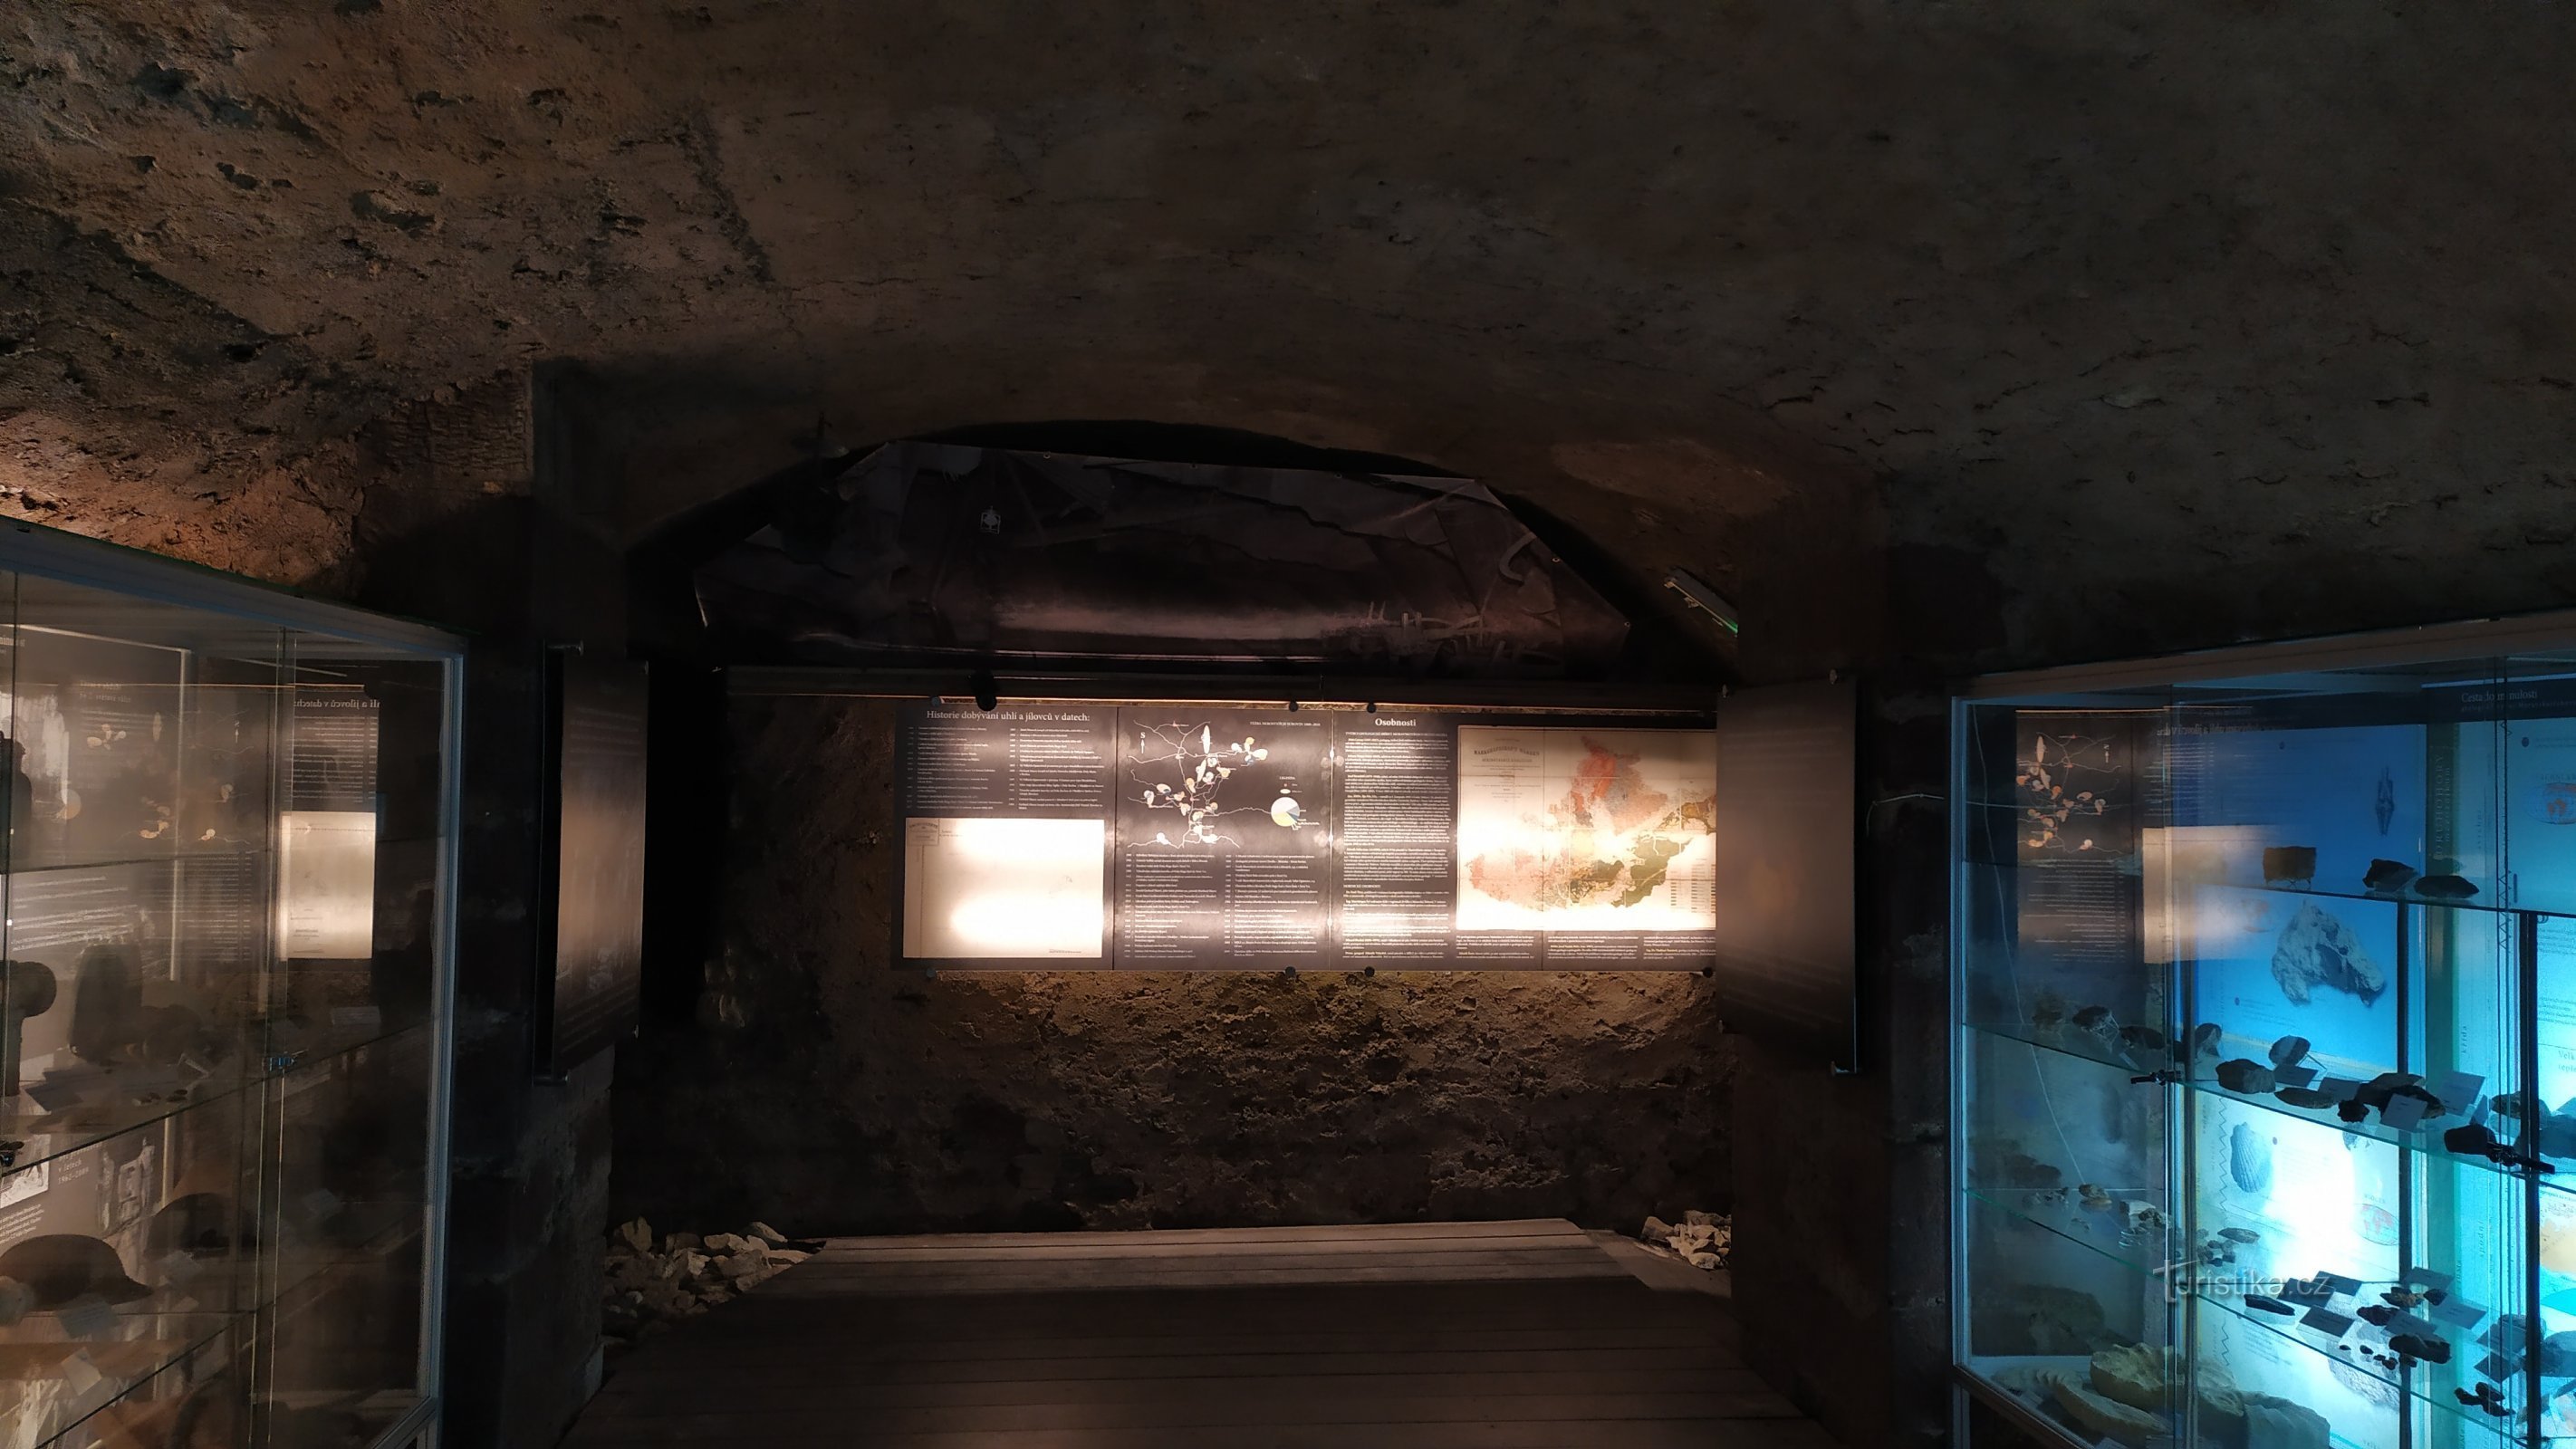 Triển lãm nằm trong phần còn lại của căn hầm của lâu đài cổ